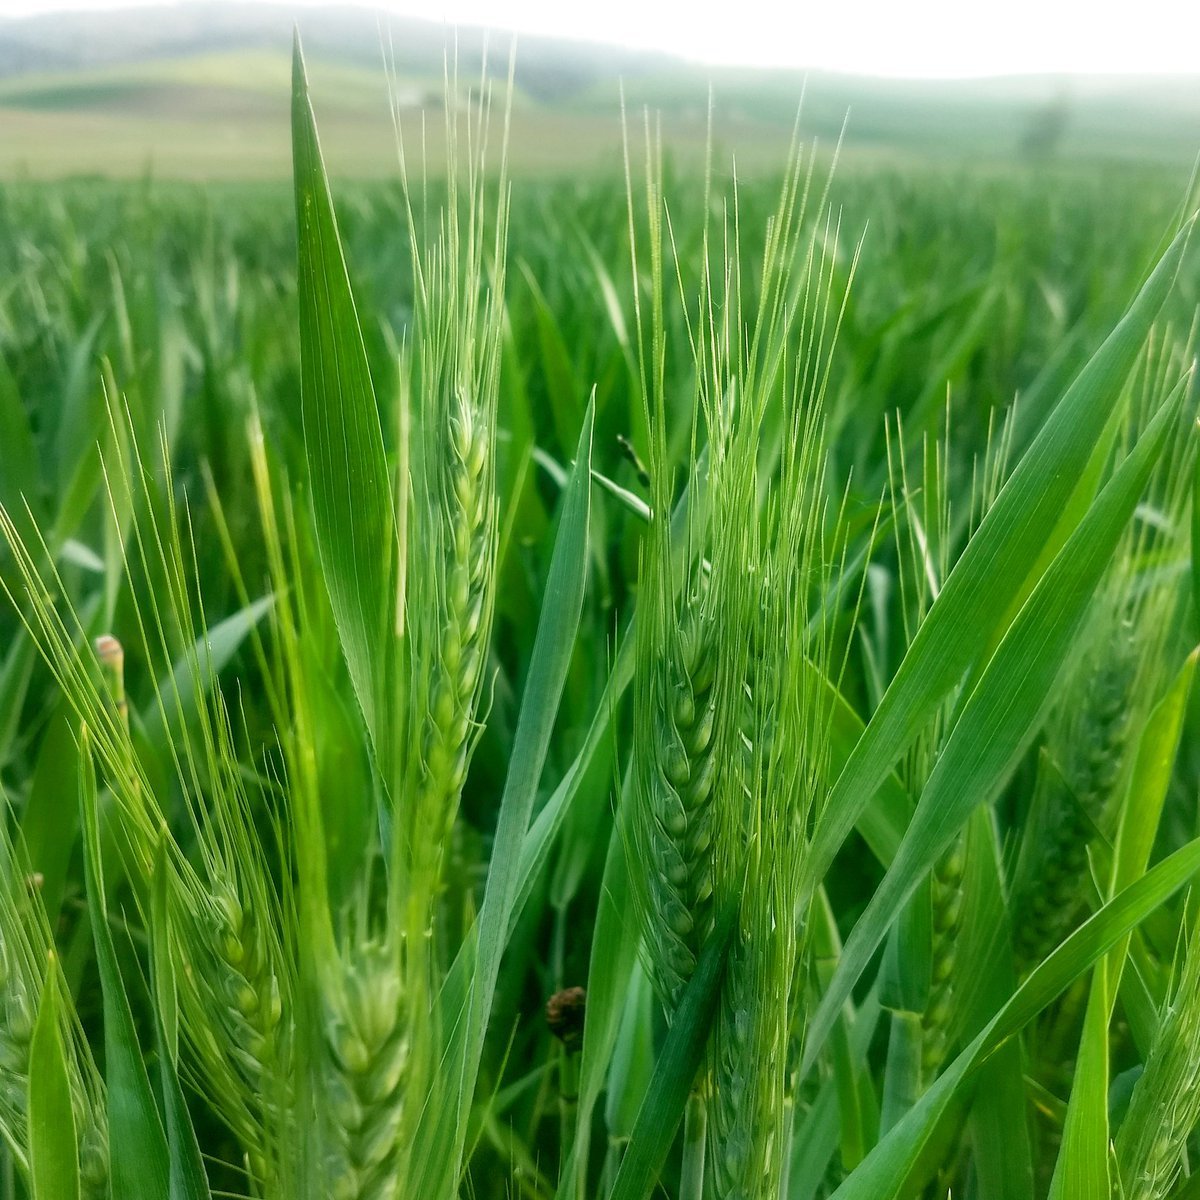 Kazakhstan: Xuất khẩu lúa mỳ 2020/21 dự báo tăng nhẹ lên mức mức 6.7 triệu tấn